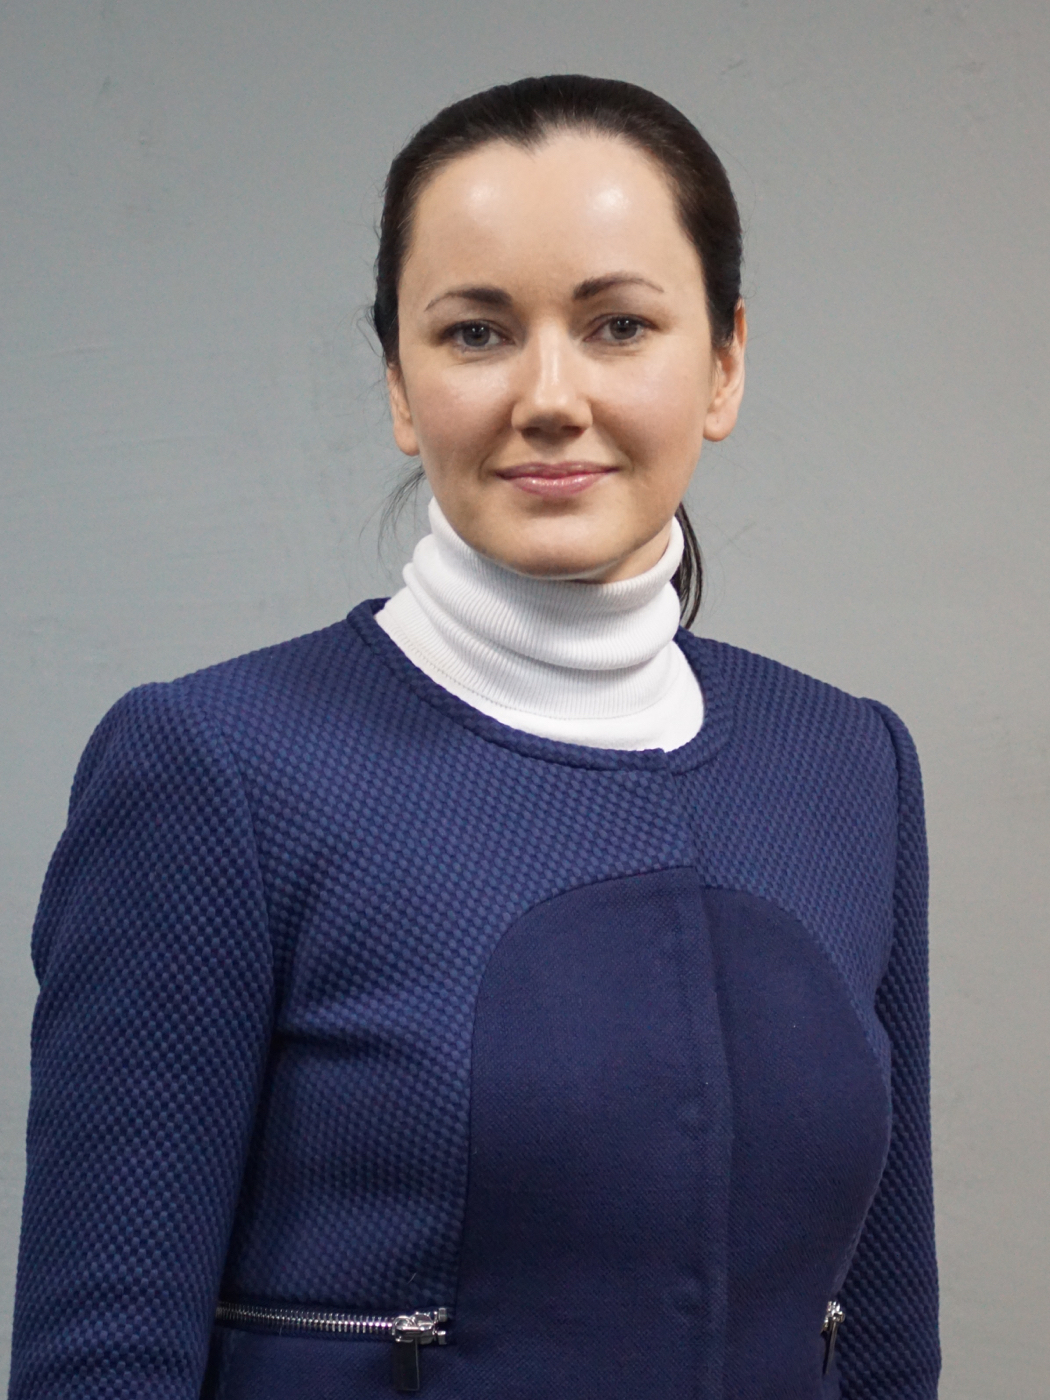 Дарина Хохлушина - заместитель директора Северо-Западного регионального центра Райффайзенбанка по розничному бизнесу